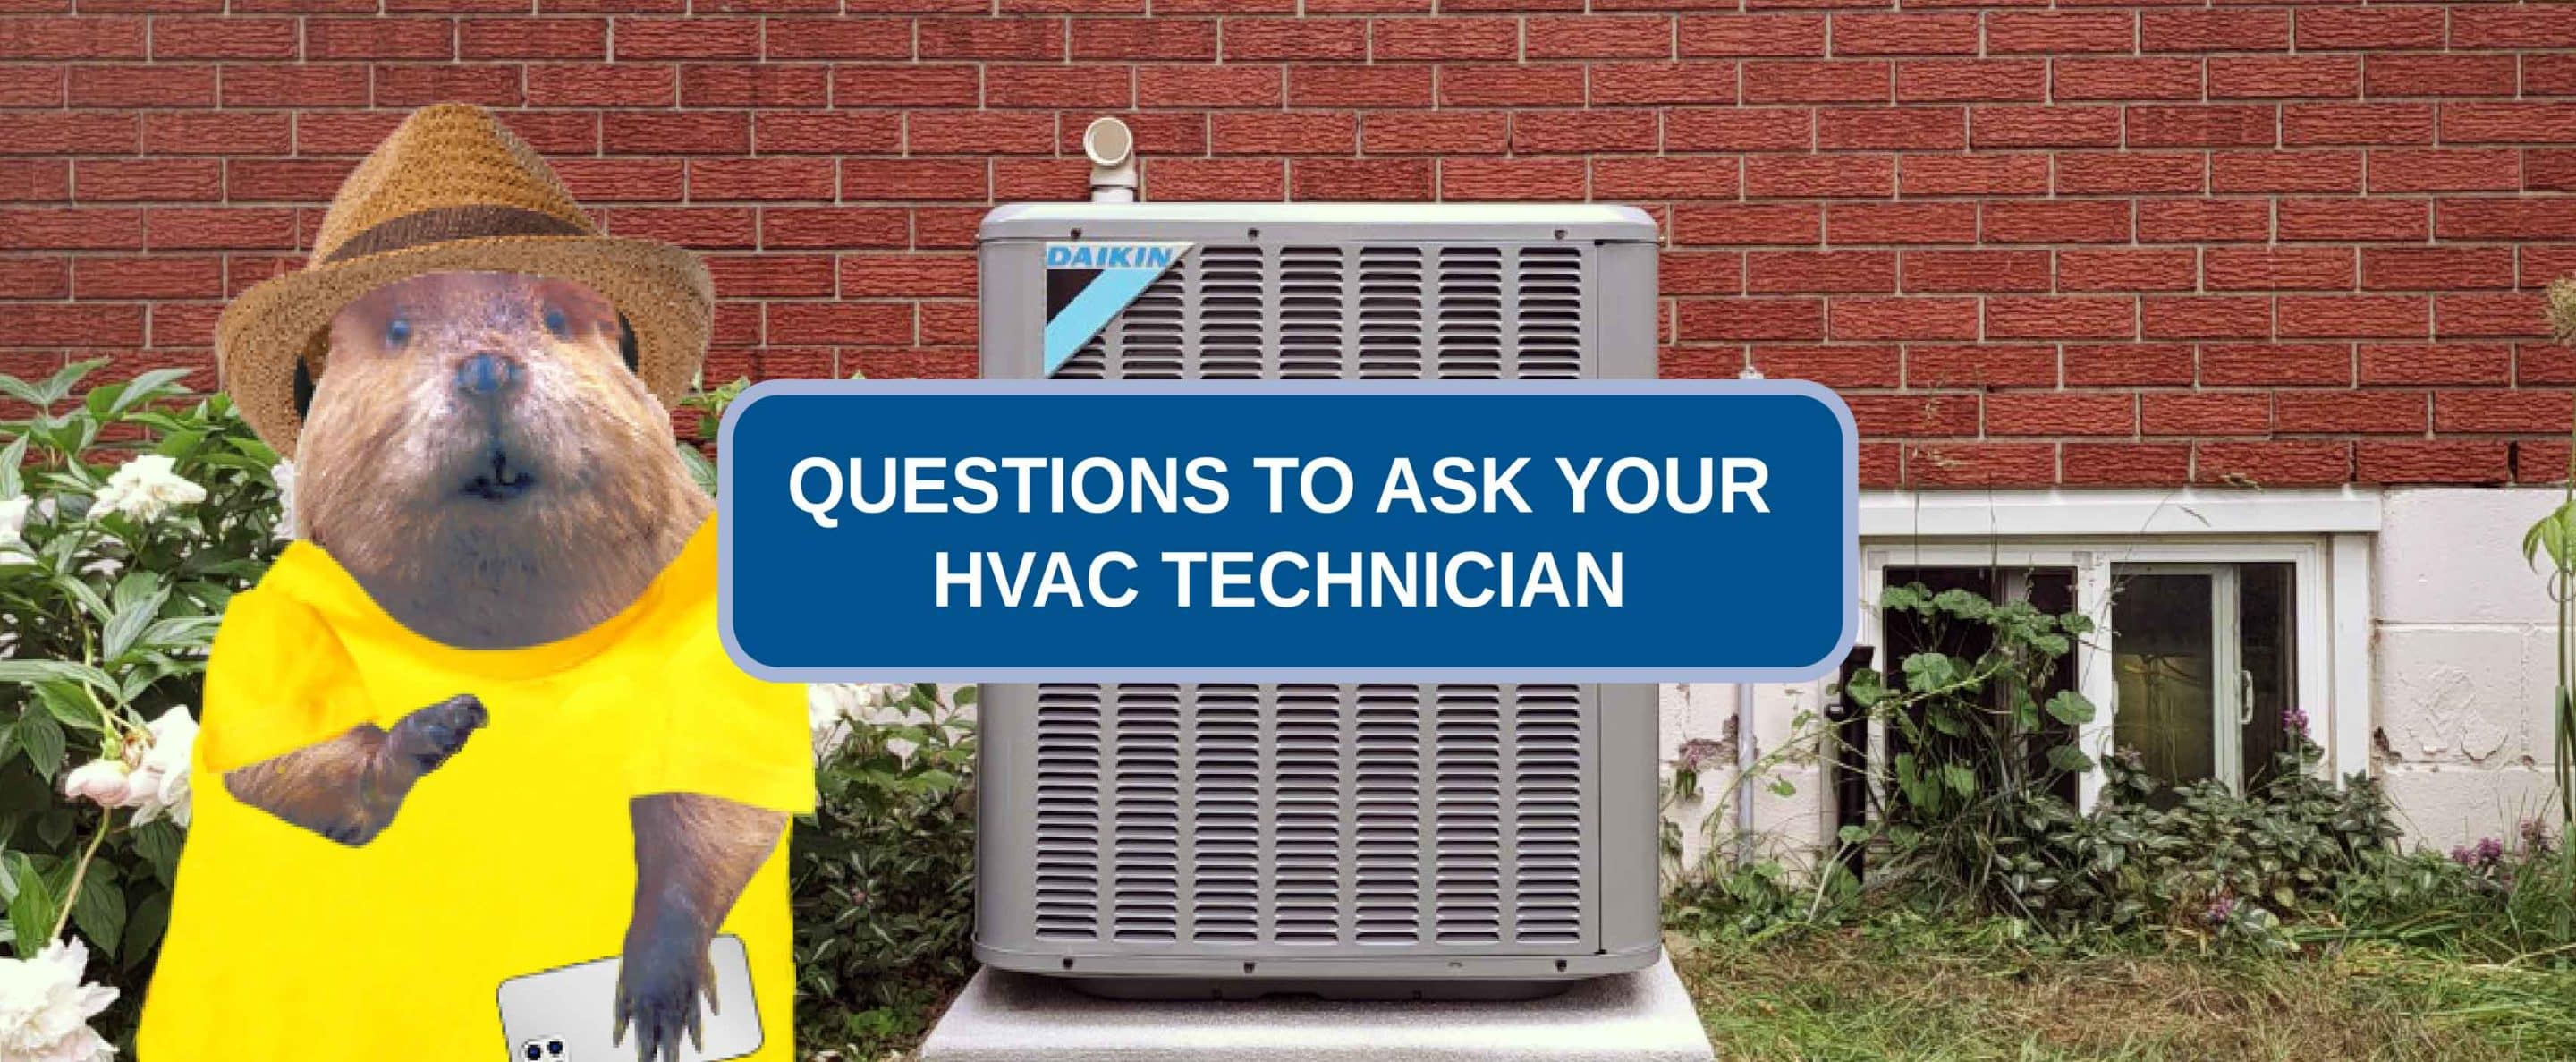 HVAC questions